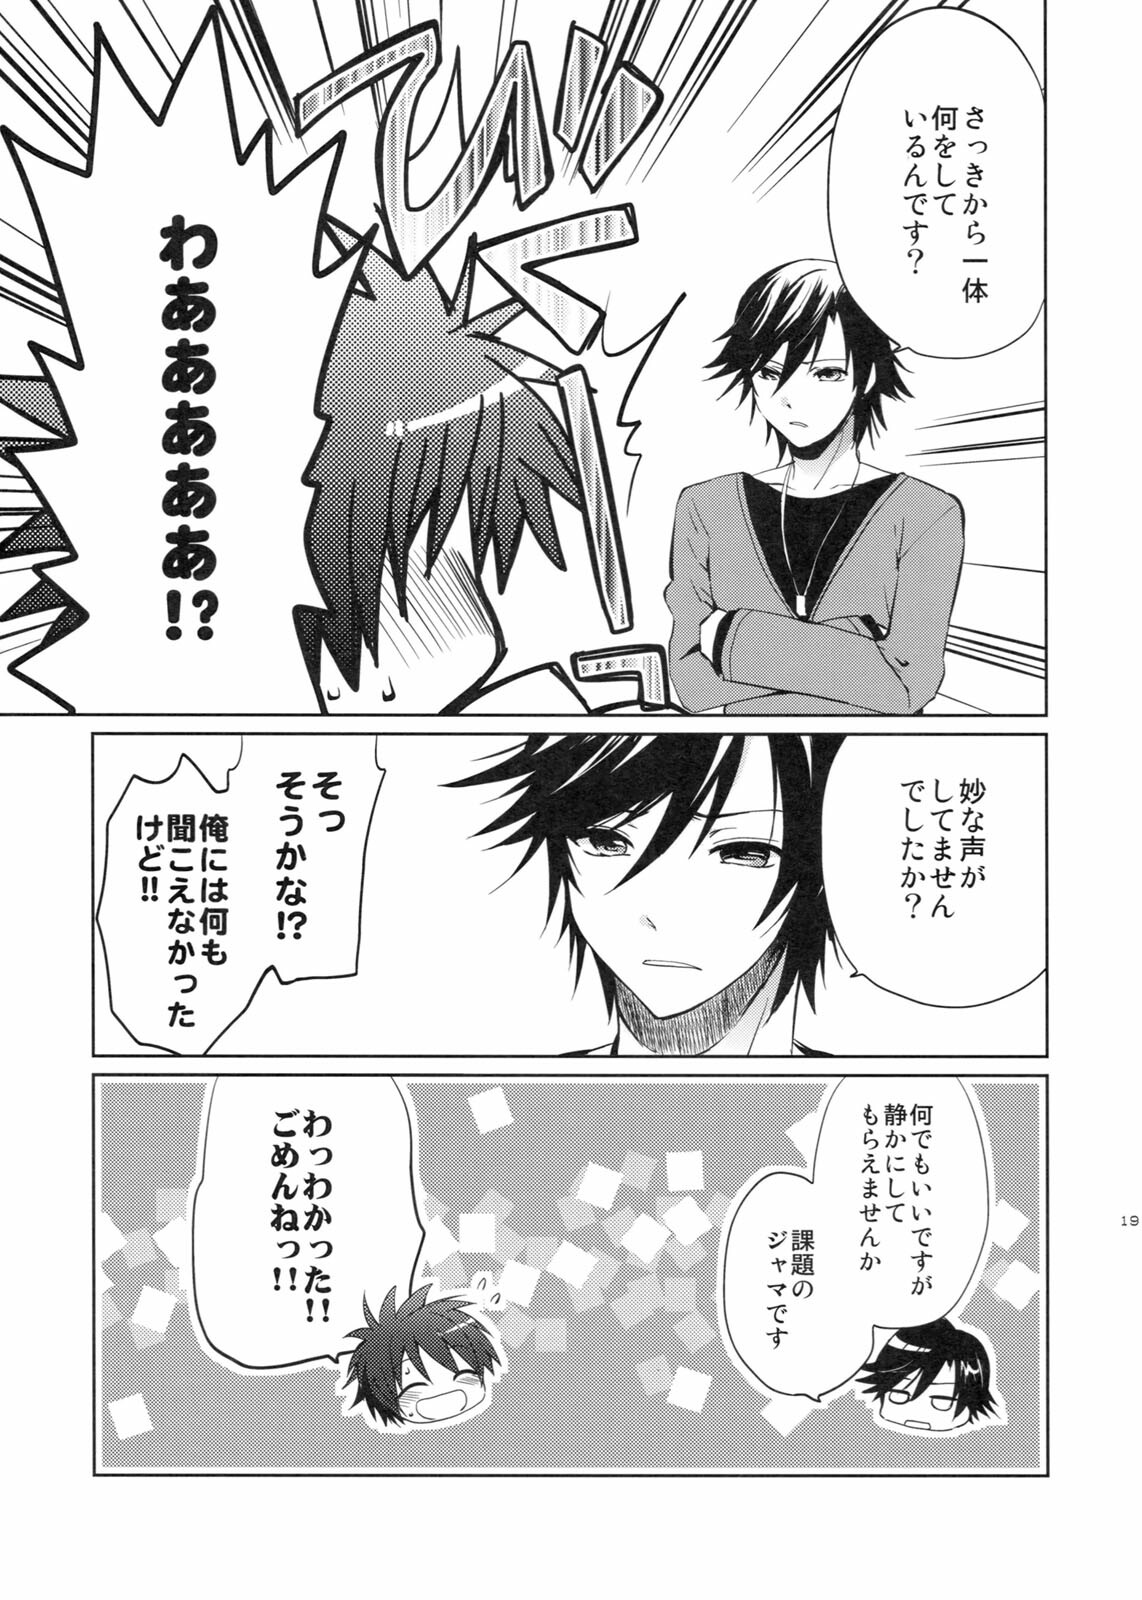 (SC53) [Kurimomo (Tsukako)] evergreen + Omake (Uta no Prince-sama) page 18 full